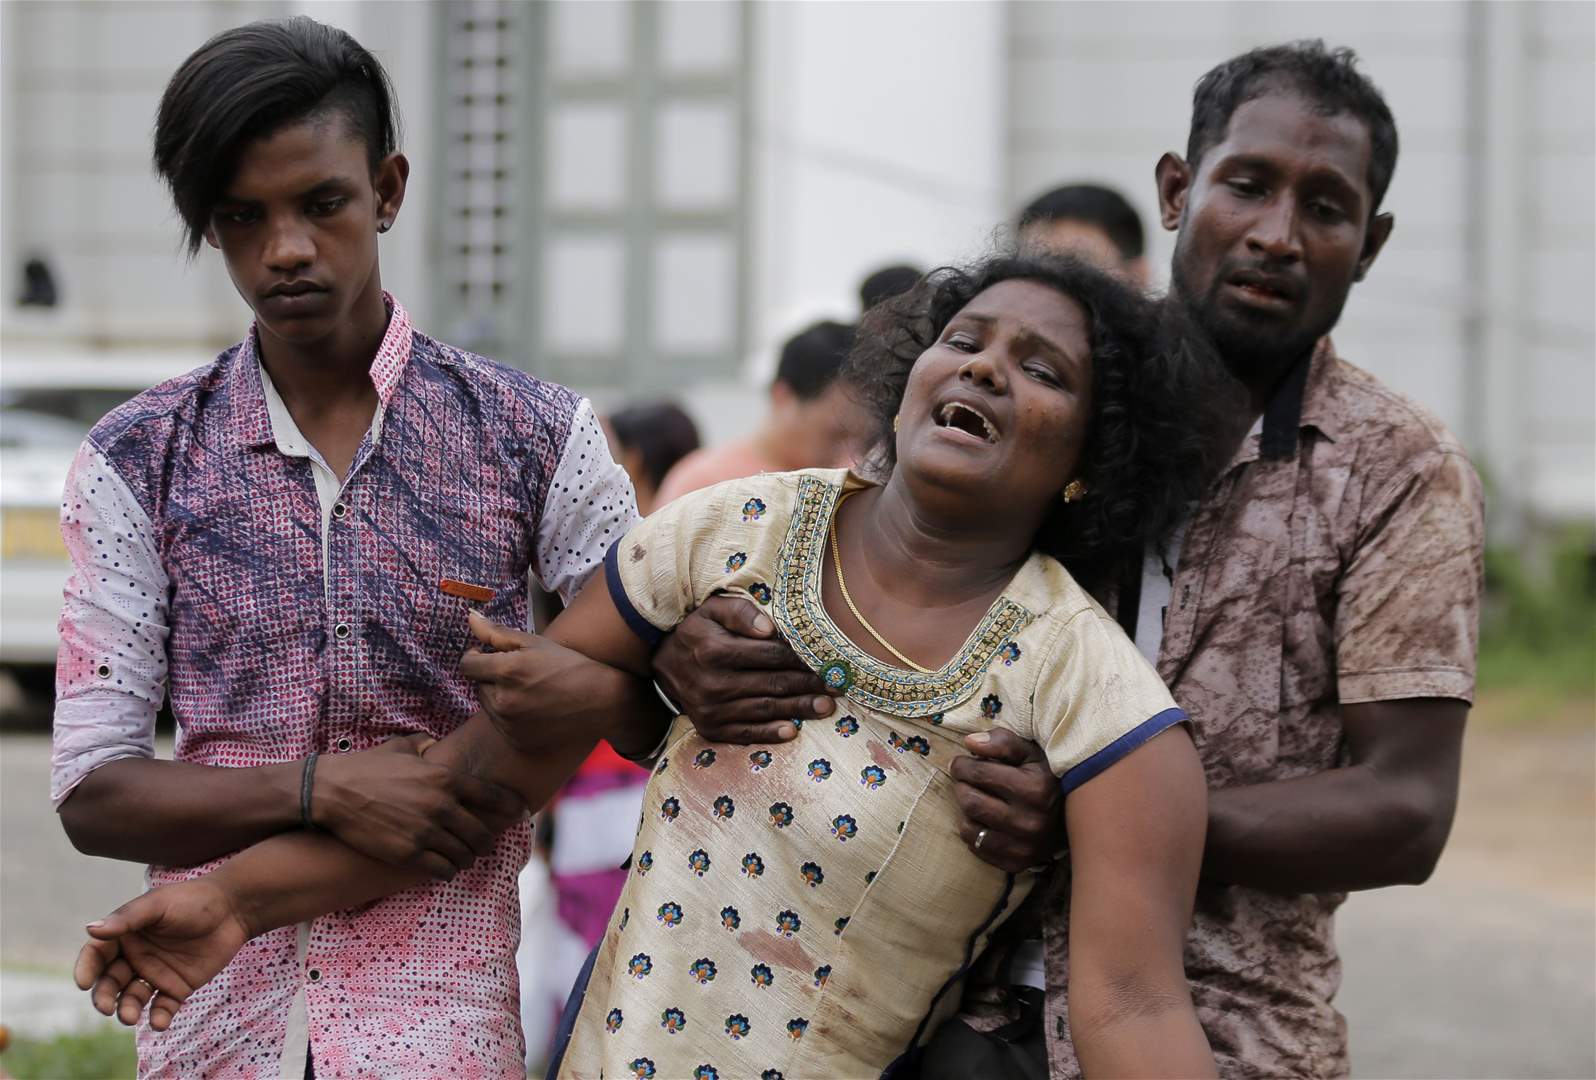 إرتفاع حصيلة تفجيرات سريلانكا إلى 290 قتيلاً وأميركا تحذر من هجمات إرهابية محتملة